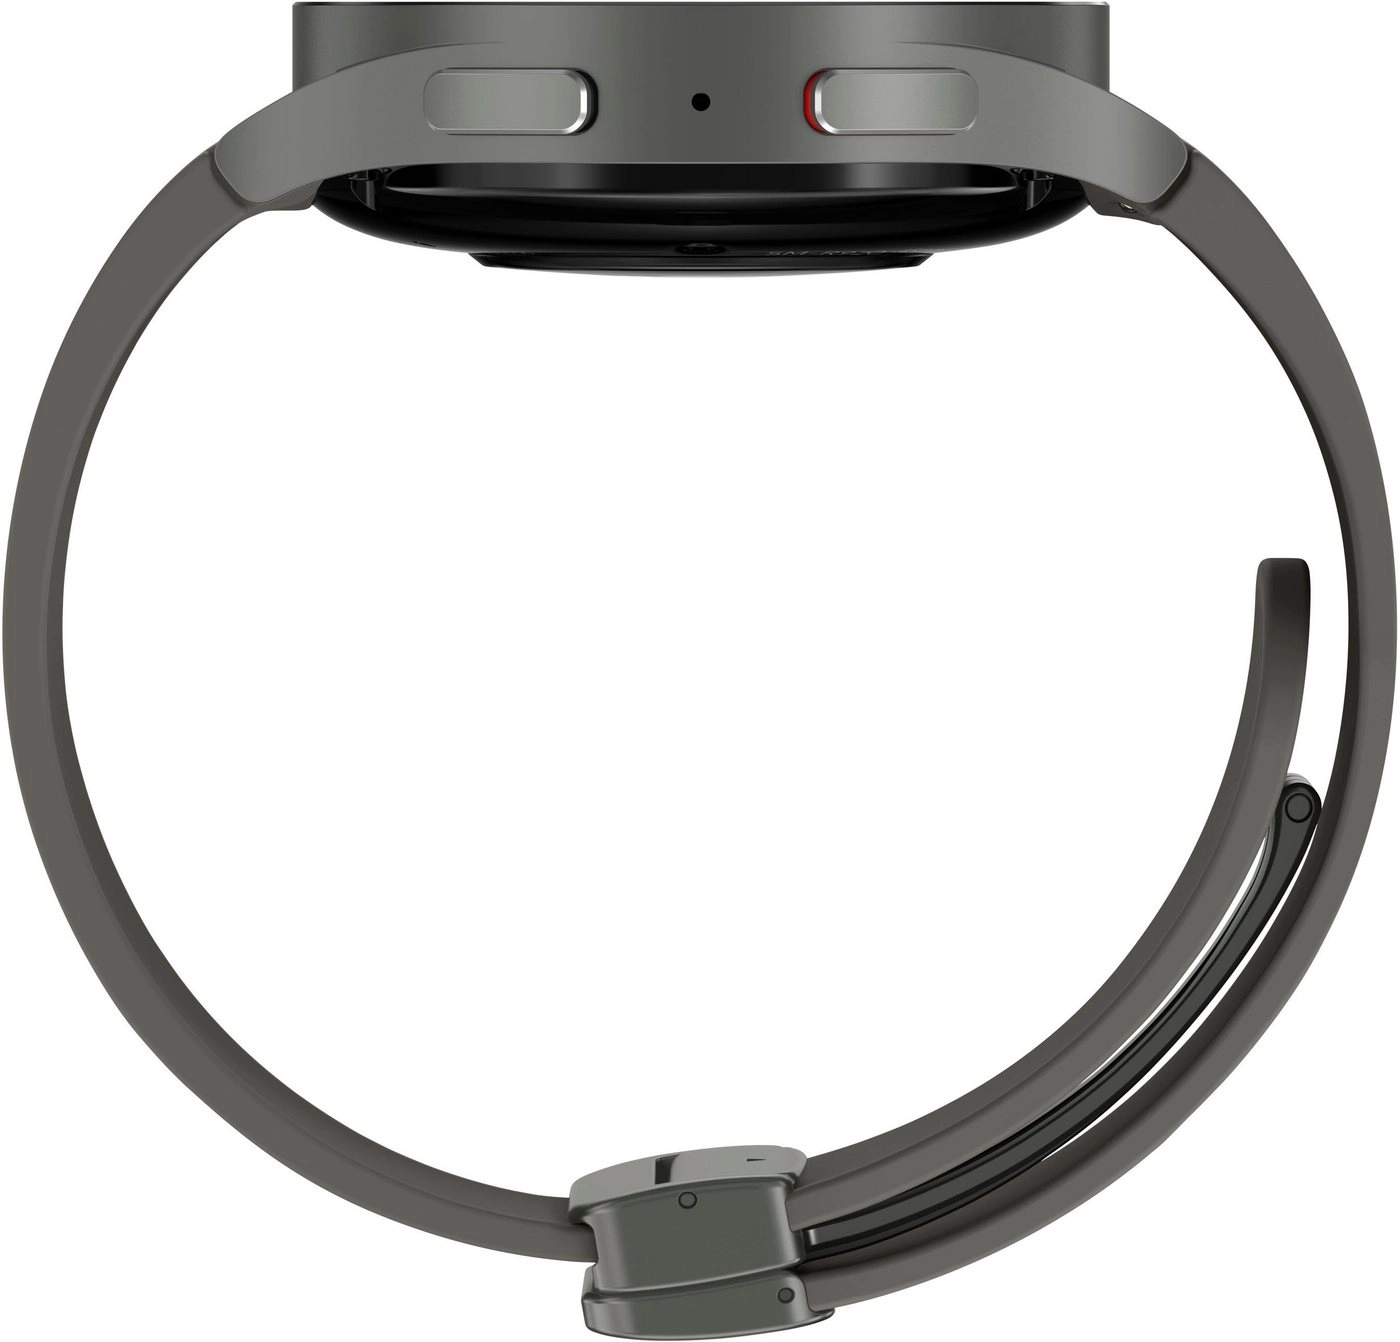 Samsung Galaxy Watch 5 Pro in grau | Smartwatch | Bis zu 80 Stunden Akkulaufzeit | Wasserdicht bis 5 ATM | Blutdruckmessung | Sturzerkennung | AMOLED Display 